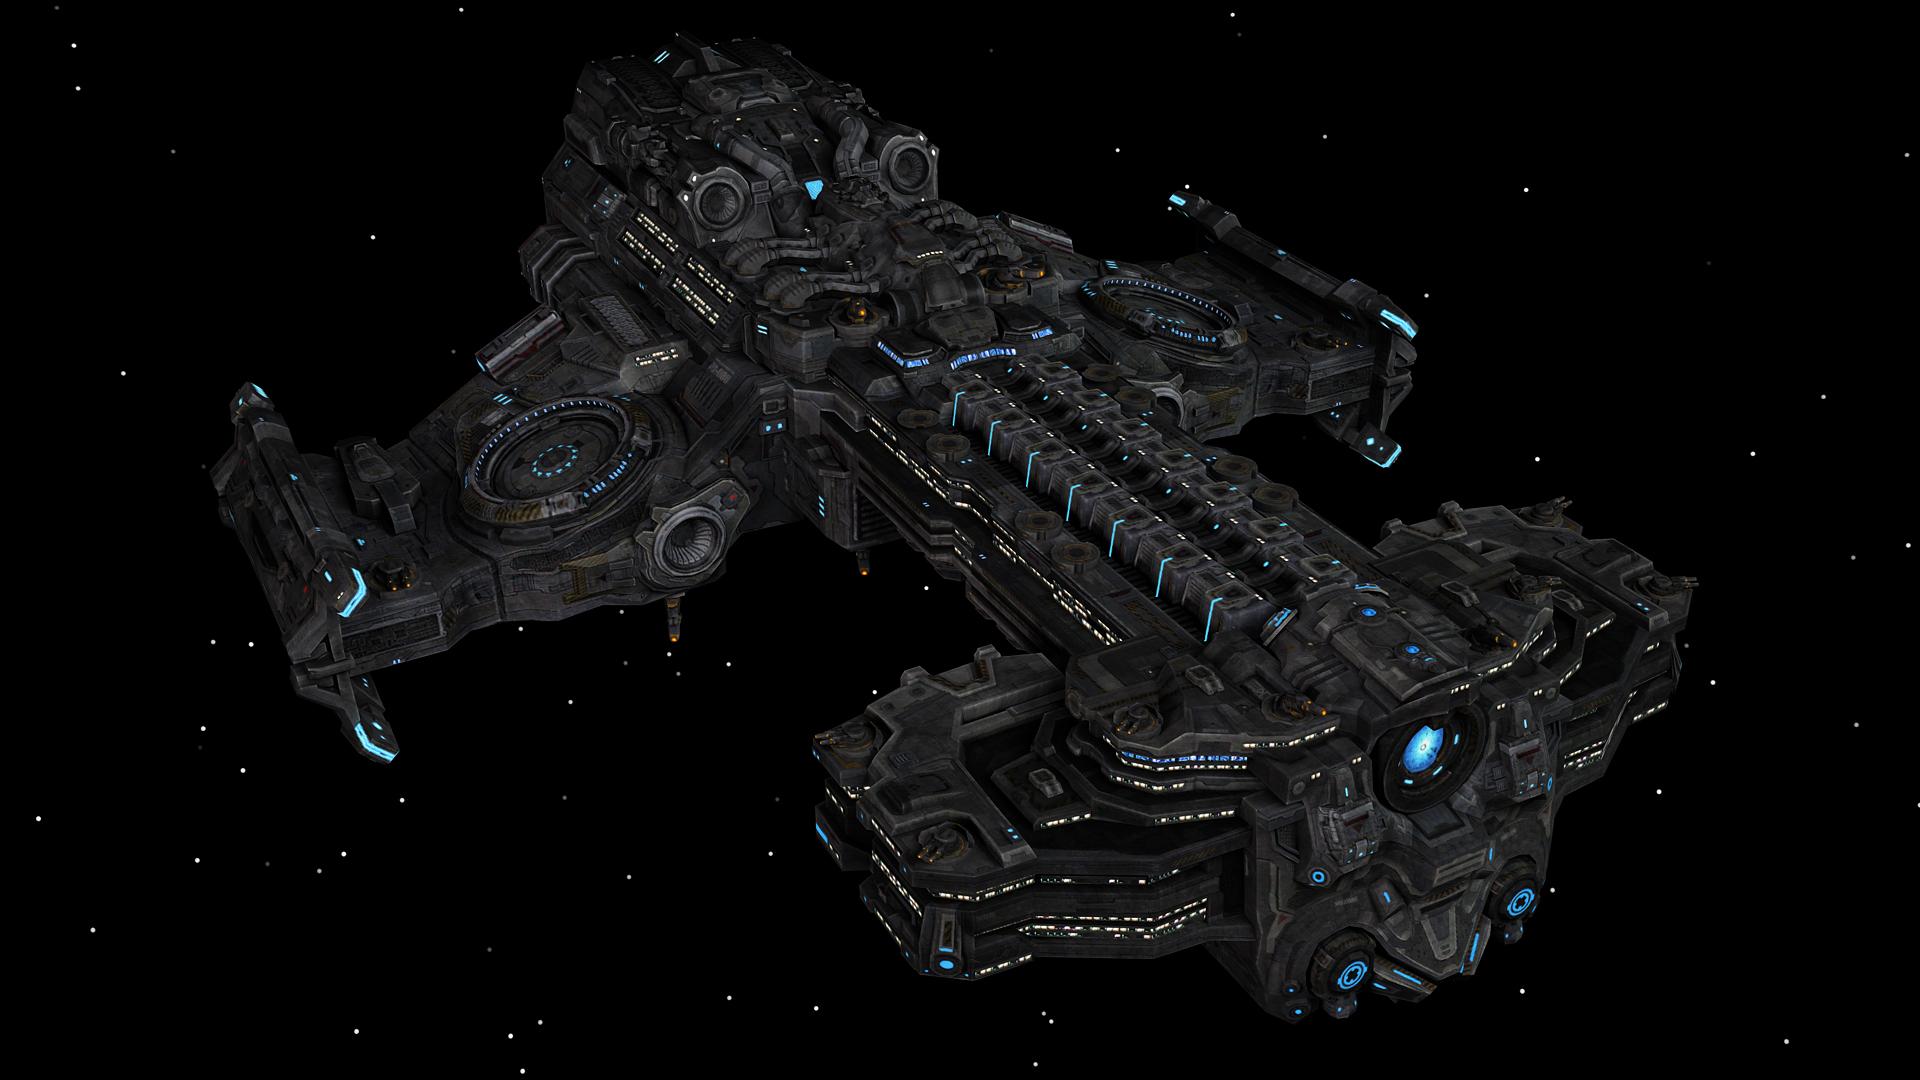 Мод Terran Ship Set - набор кораблей из Star Craft для Stellaris